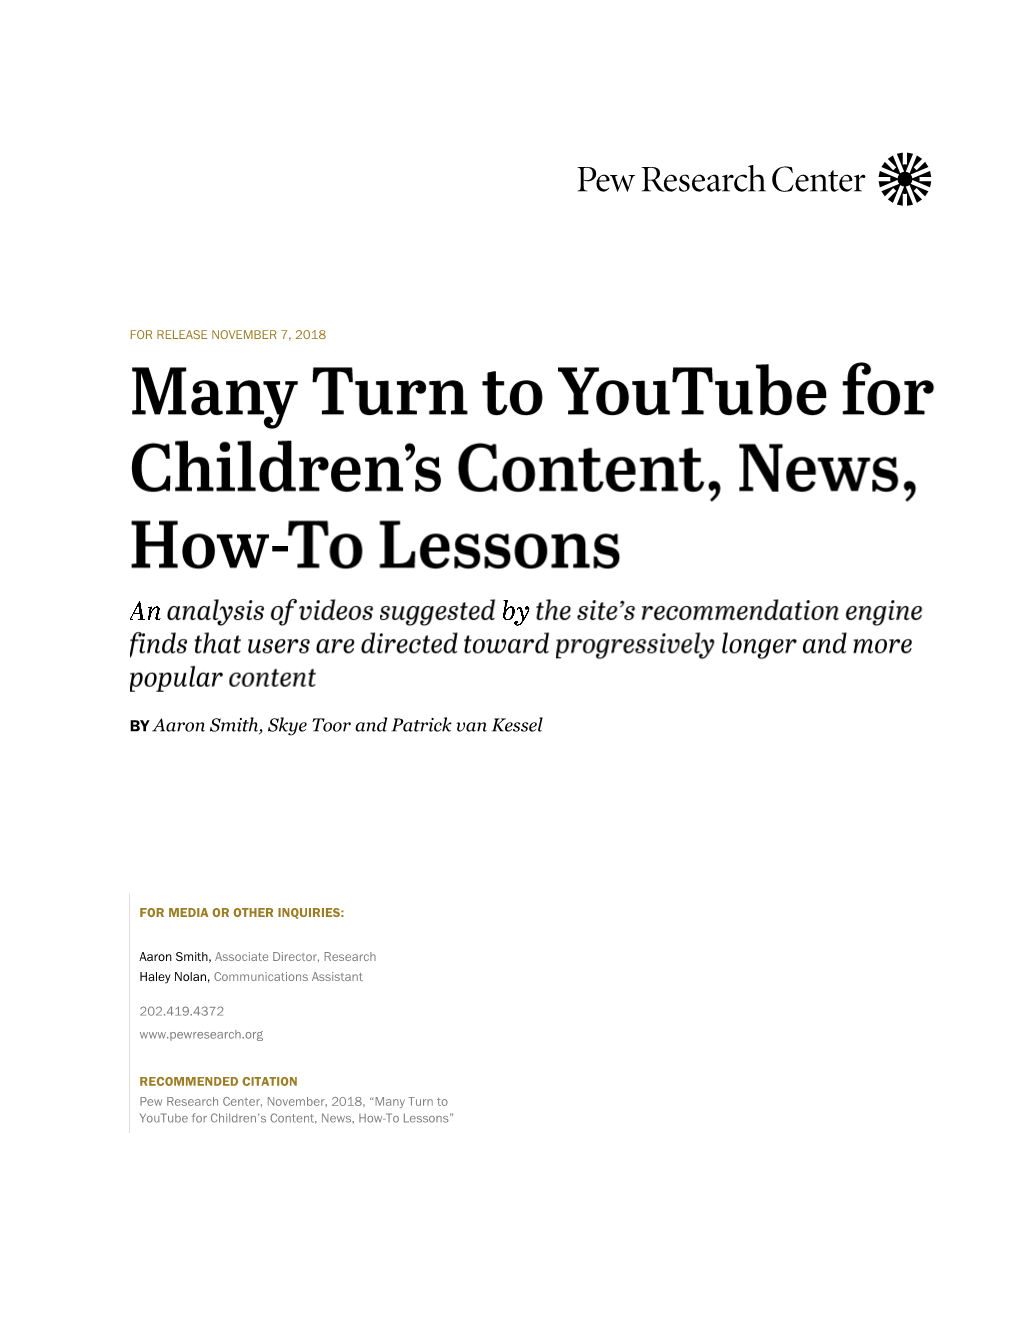 Children's Content